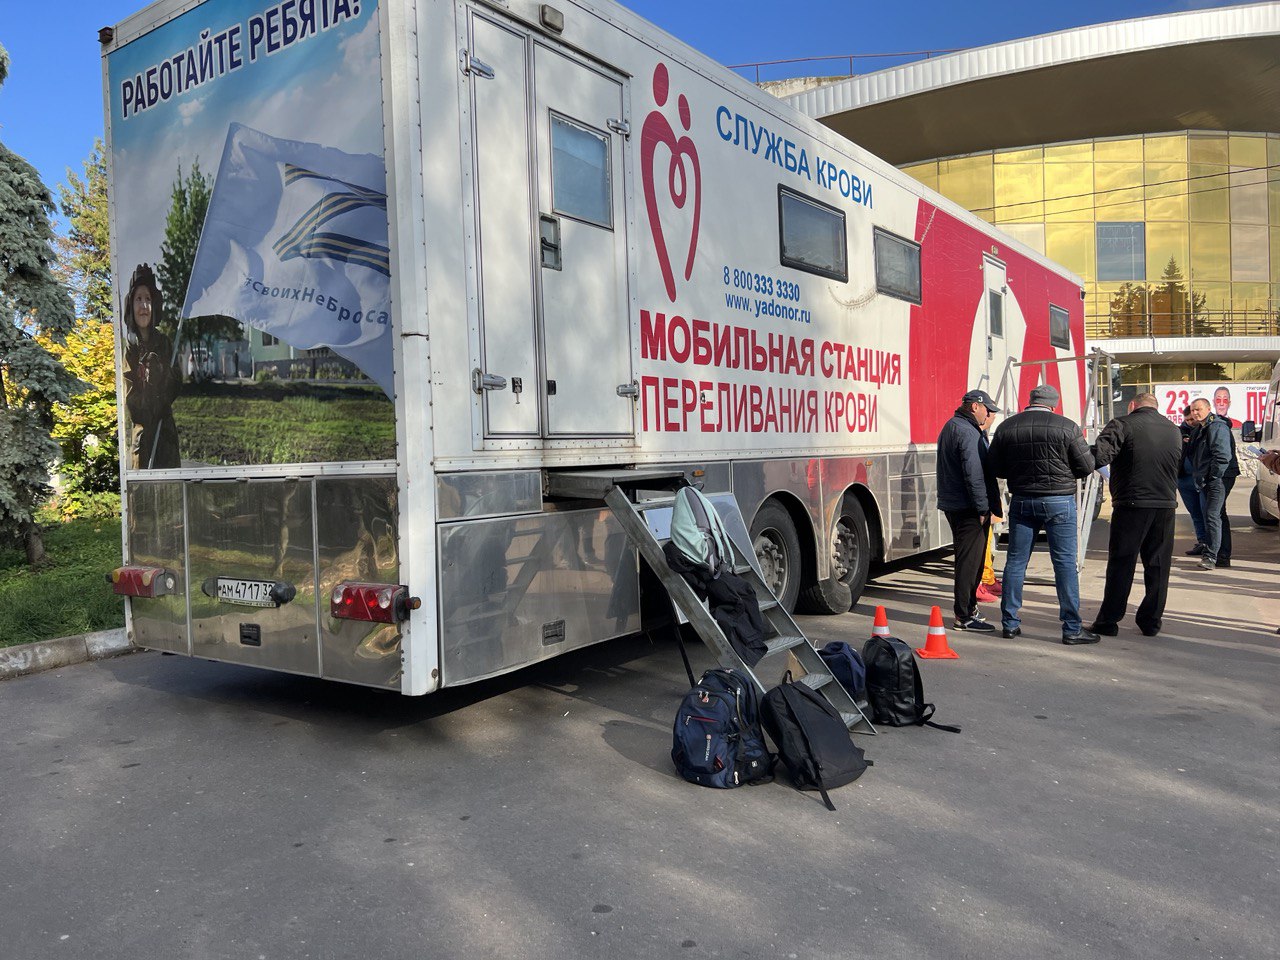 451 донор посетил брянскую станцию переливания крови за минувшую неделю